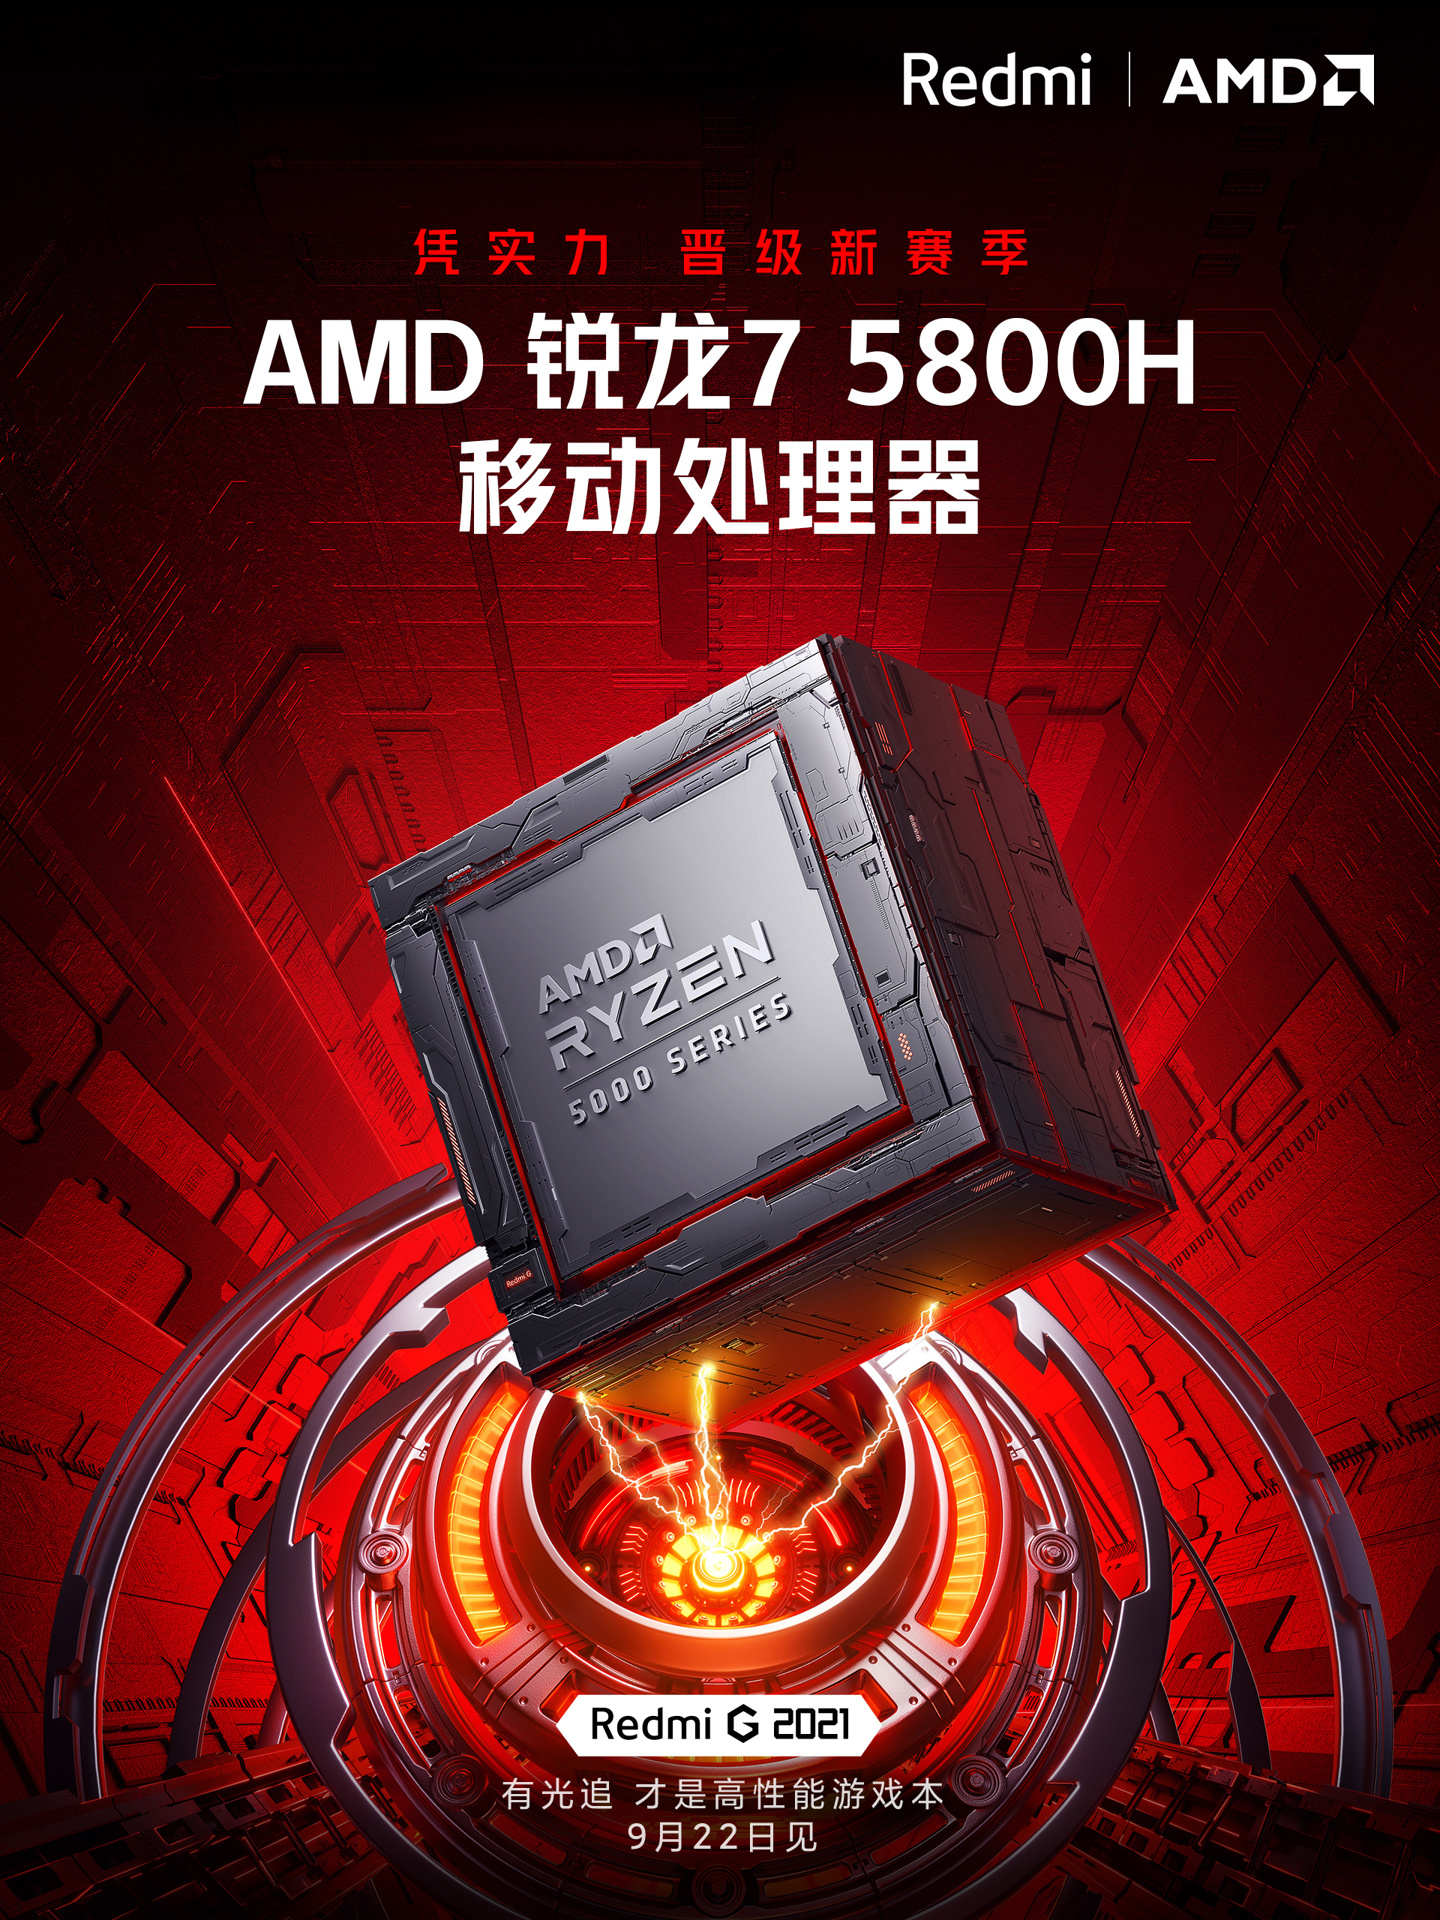 Redmi G 2021 CPU Teaser